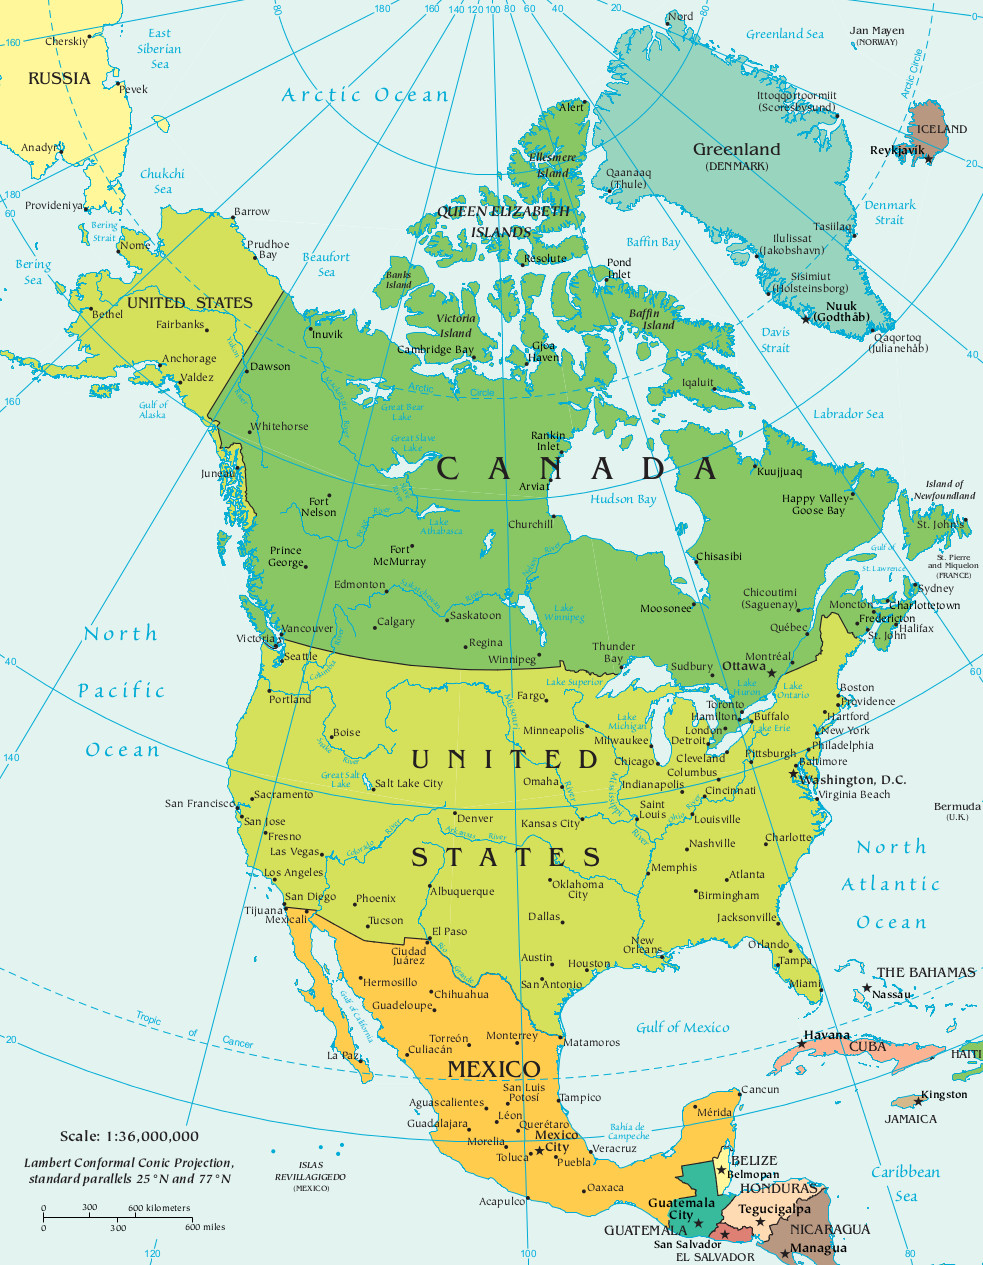 Mapa dos Estados Unidos da América com destaque ao estado da Flórida